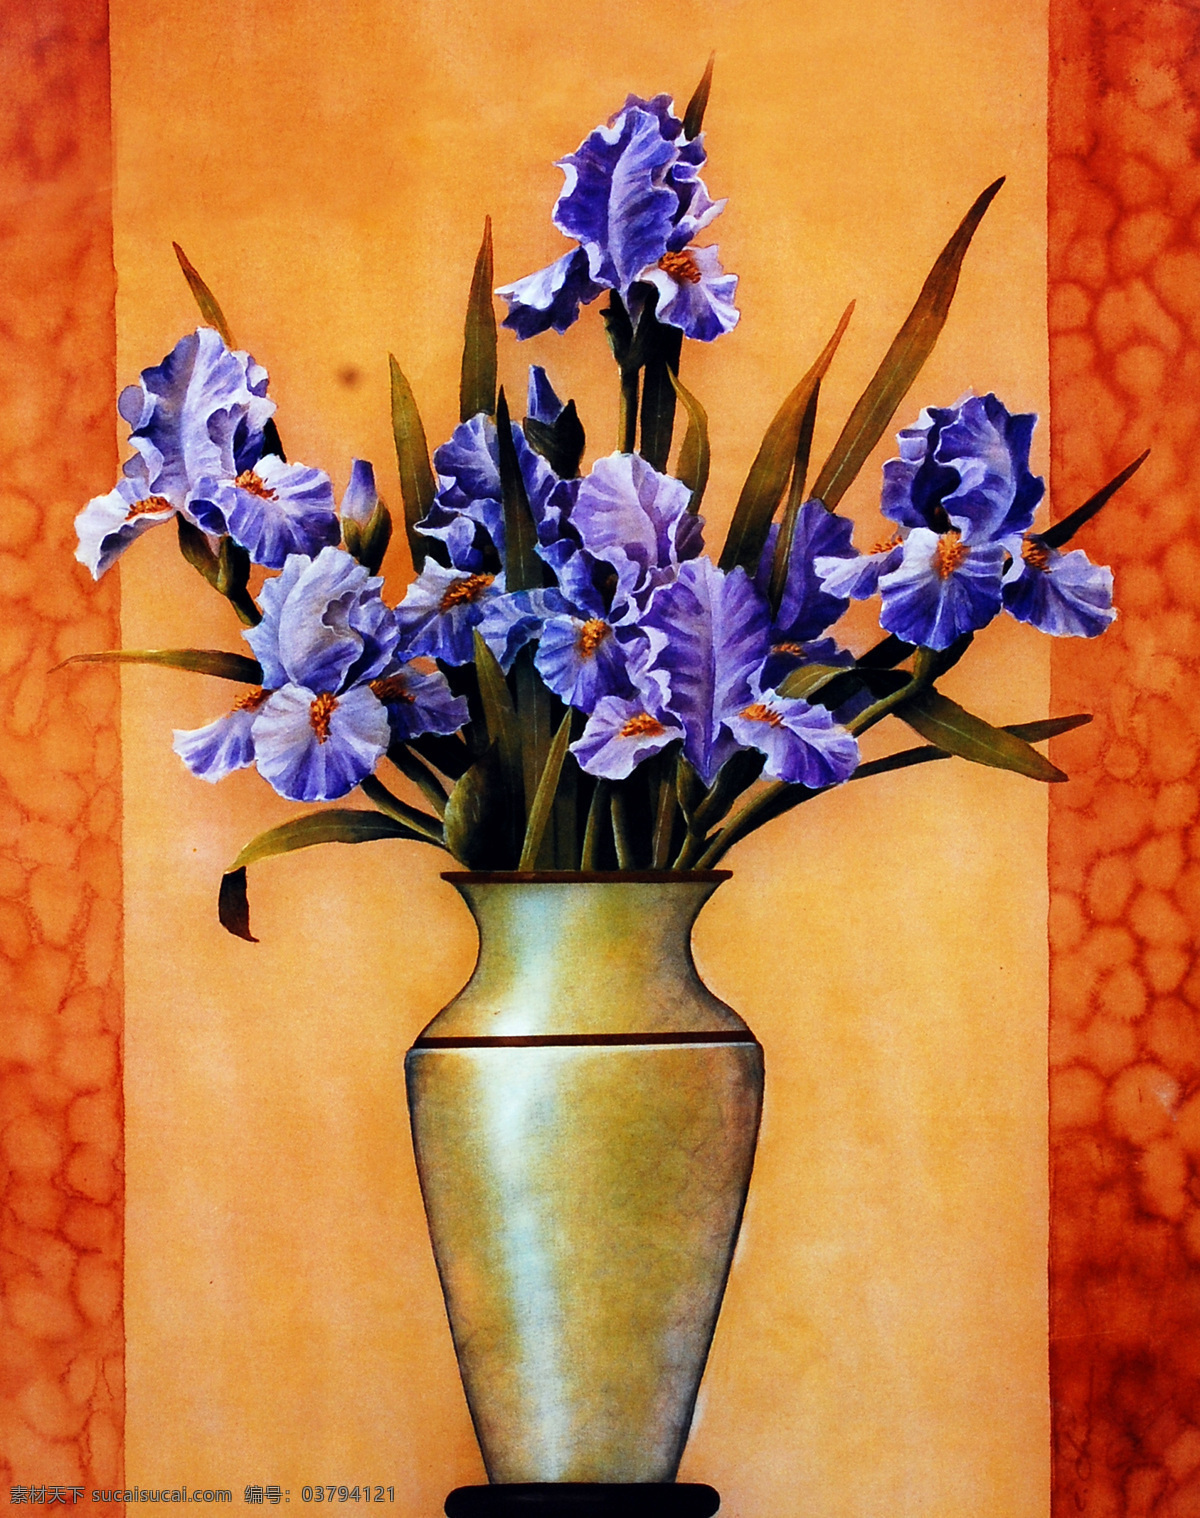 花瓶 里 紫色 花 无框画 花卉 装饰画 油画 紫色花 壁画 挂画 墙画 挂板 绘画书法 文化艺术 书画文字 橙色